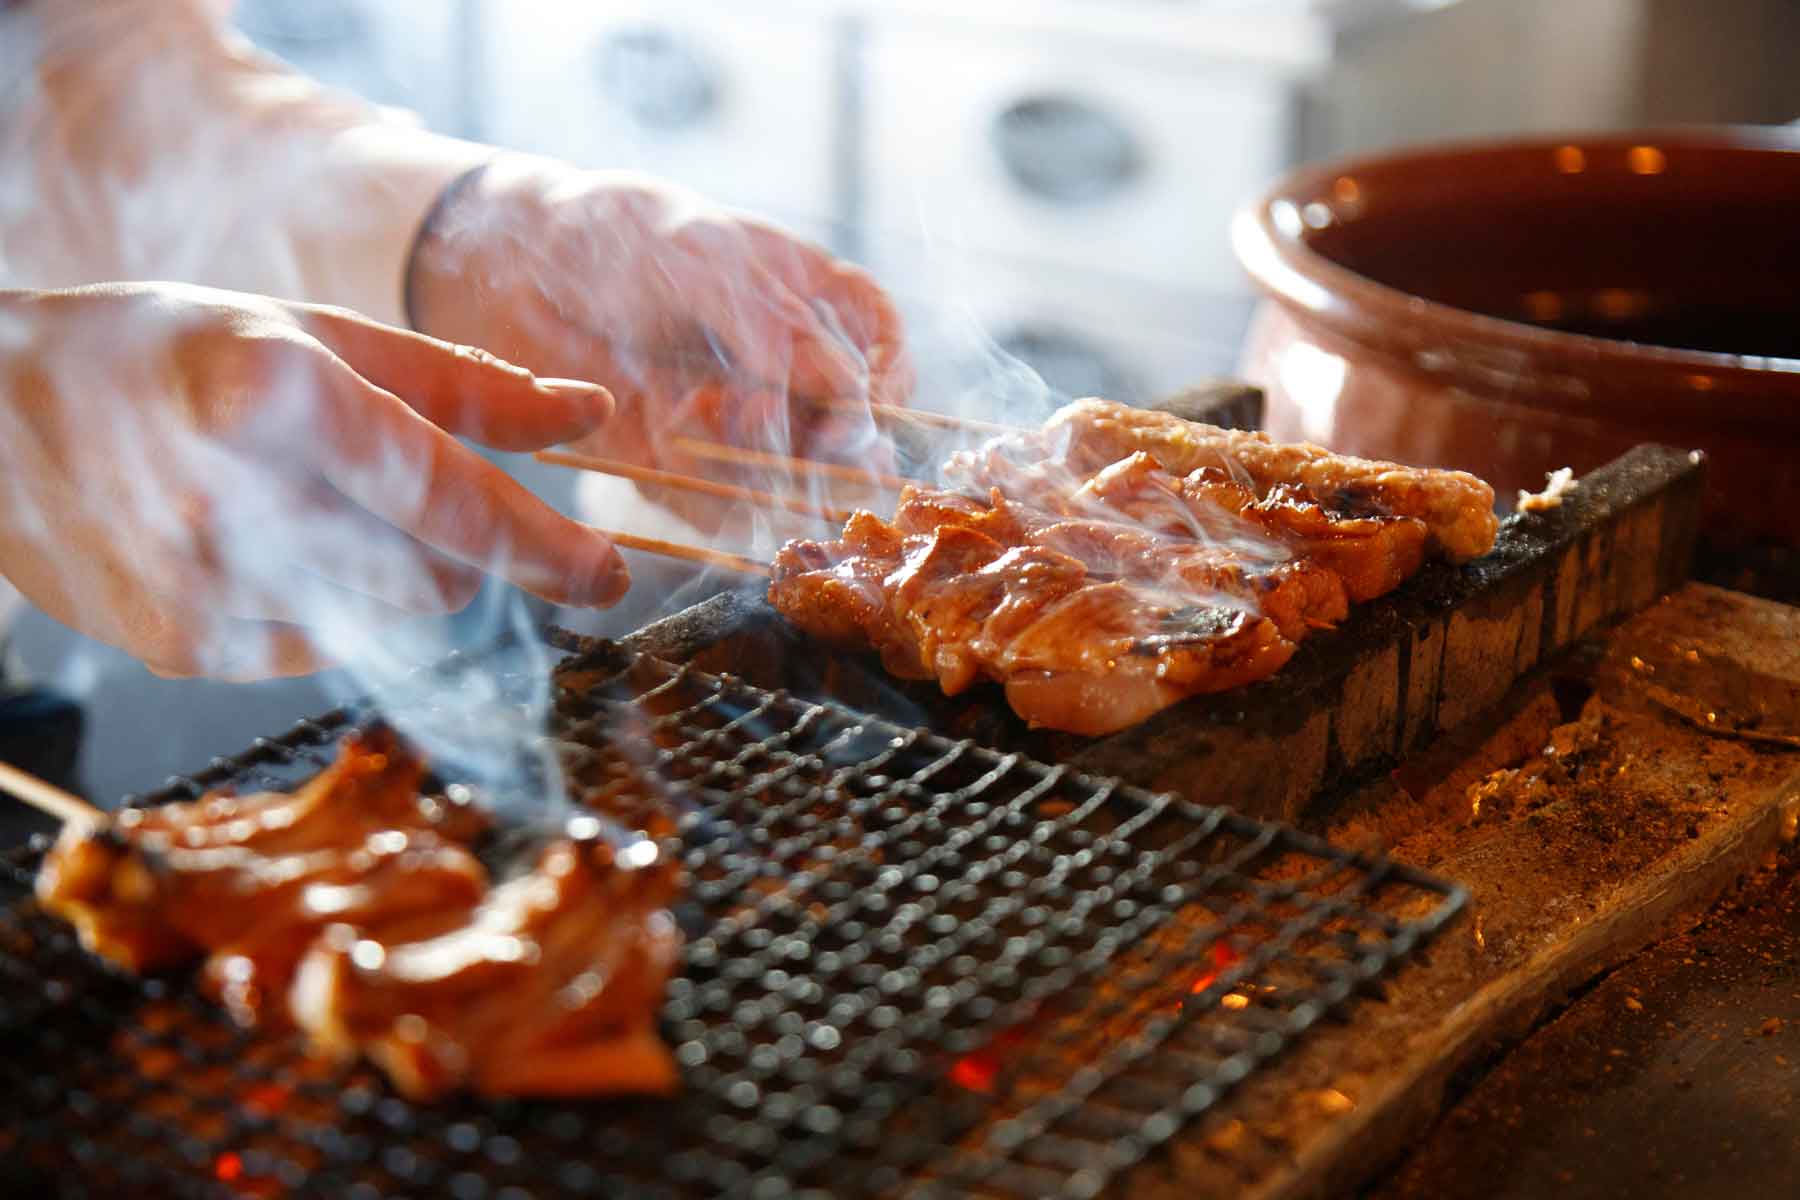 高級な串焼き店での食事は、ただ単に美味しい料理を堪能するだけでなく、素晴らしい雰囲気とともに特別な時間を過ごせるというメリットがあります。